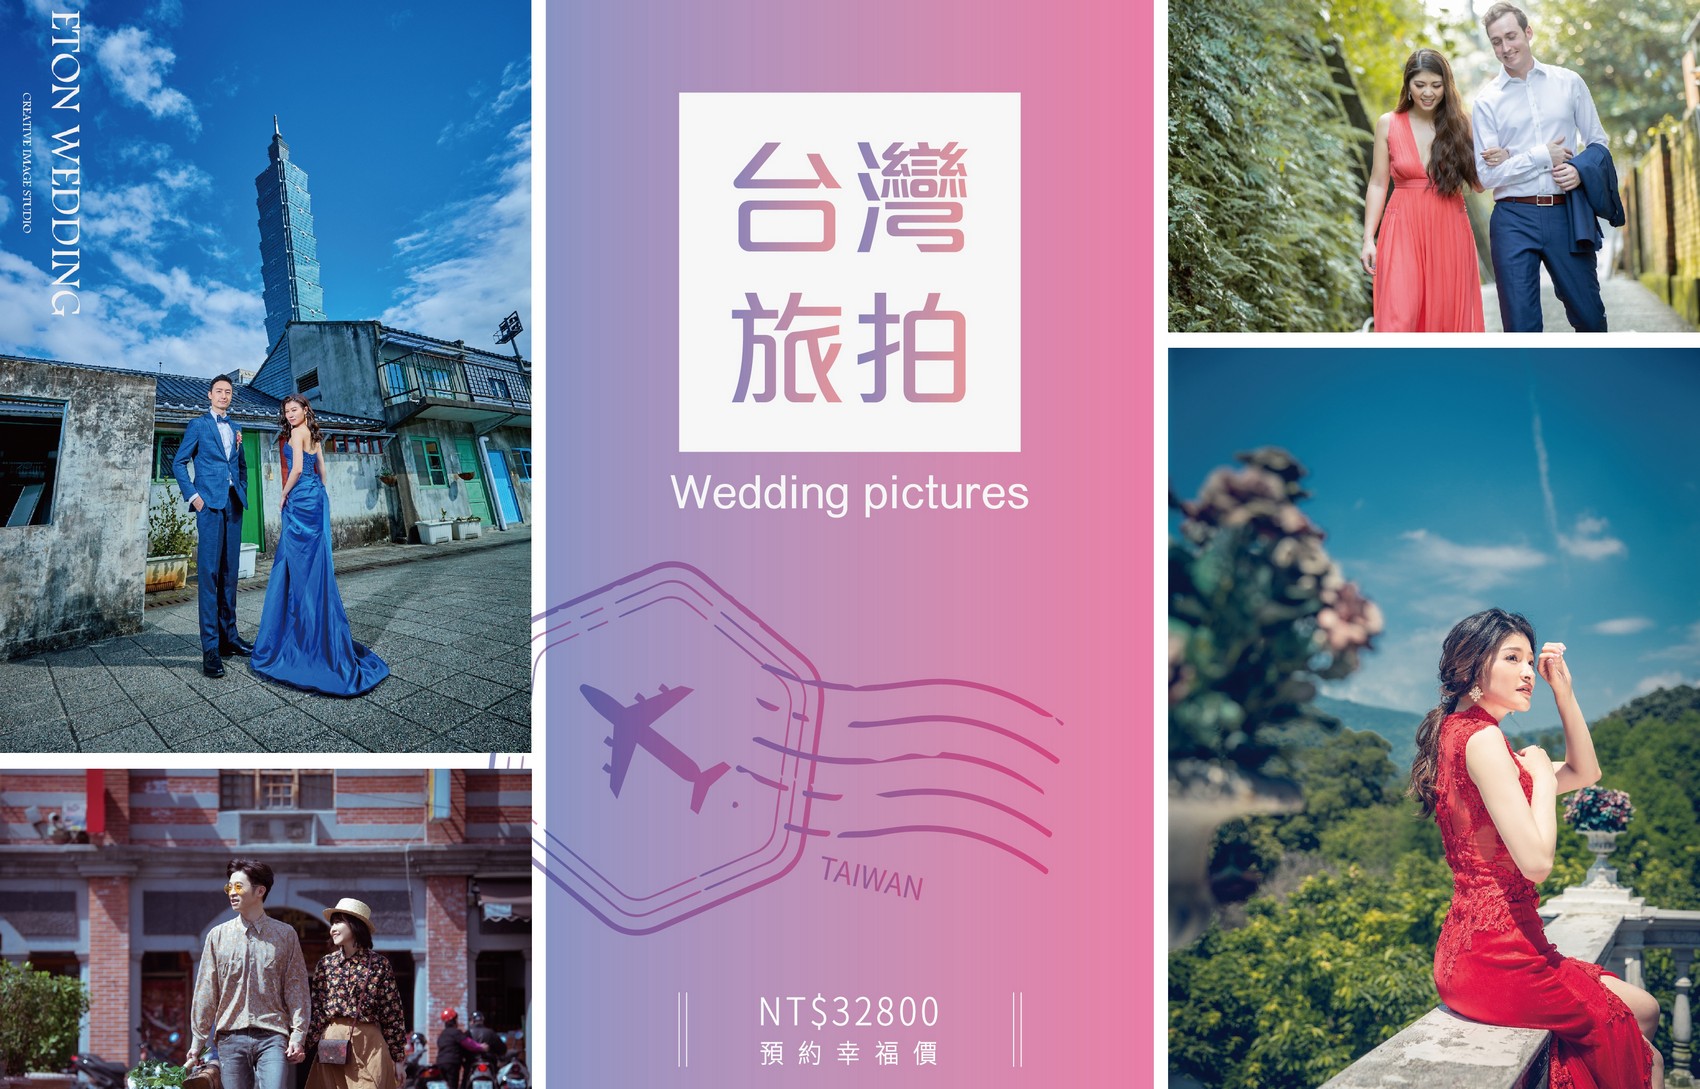 台灣 婚紗工作室,台灣 婚紗攝影價格,桃園拍婚紗,桃園 婚紗攝影,桃園 婚紗工作室